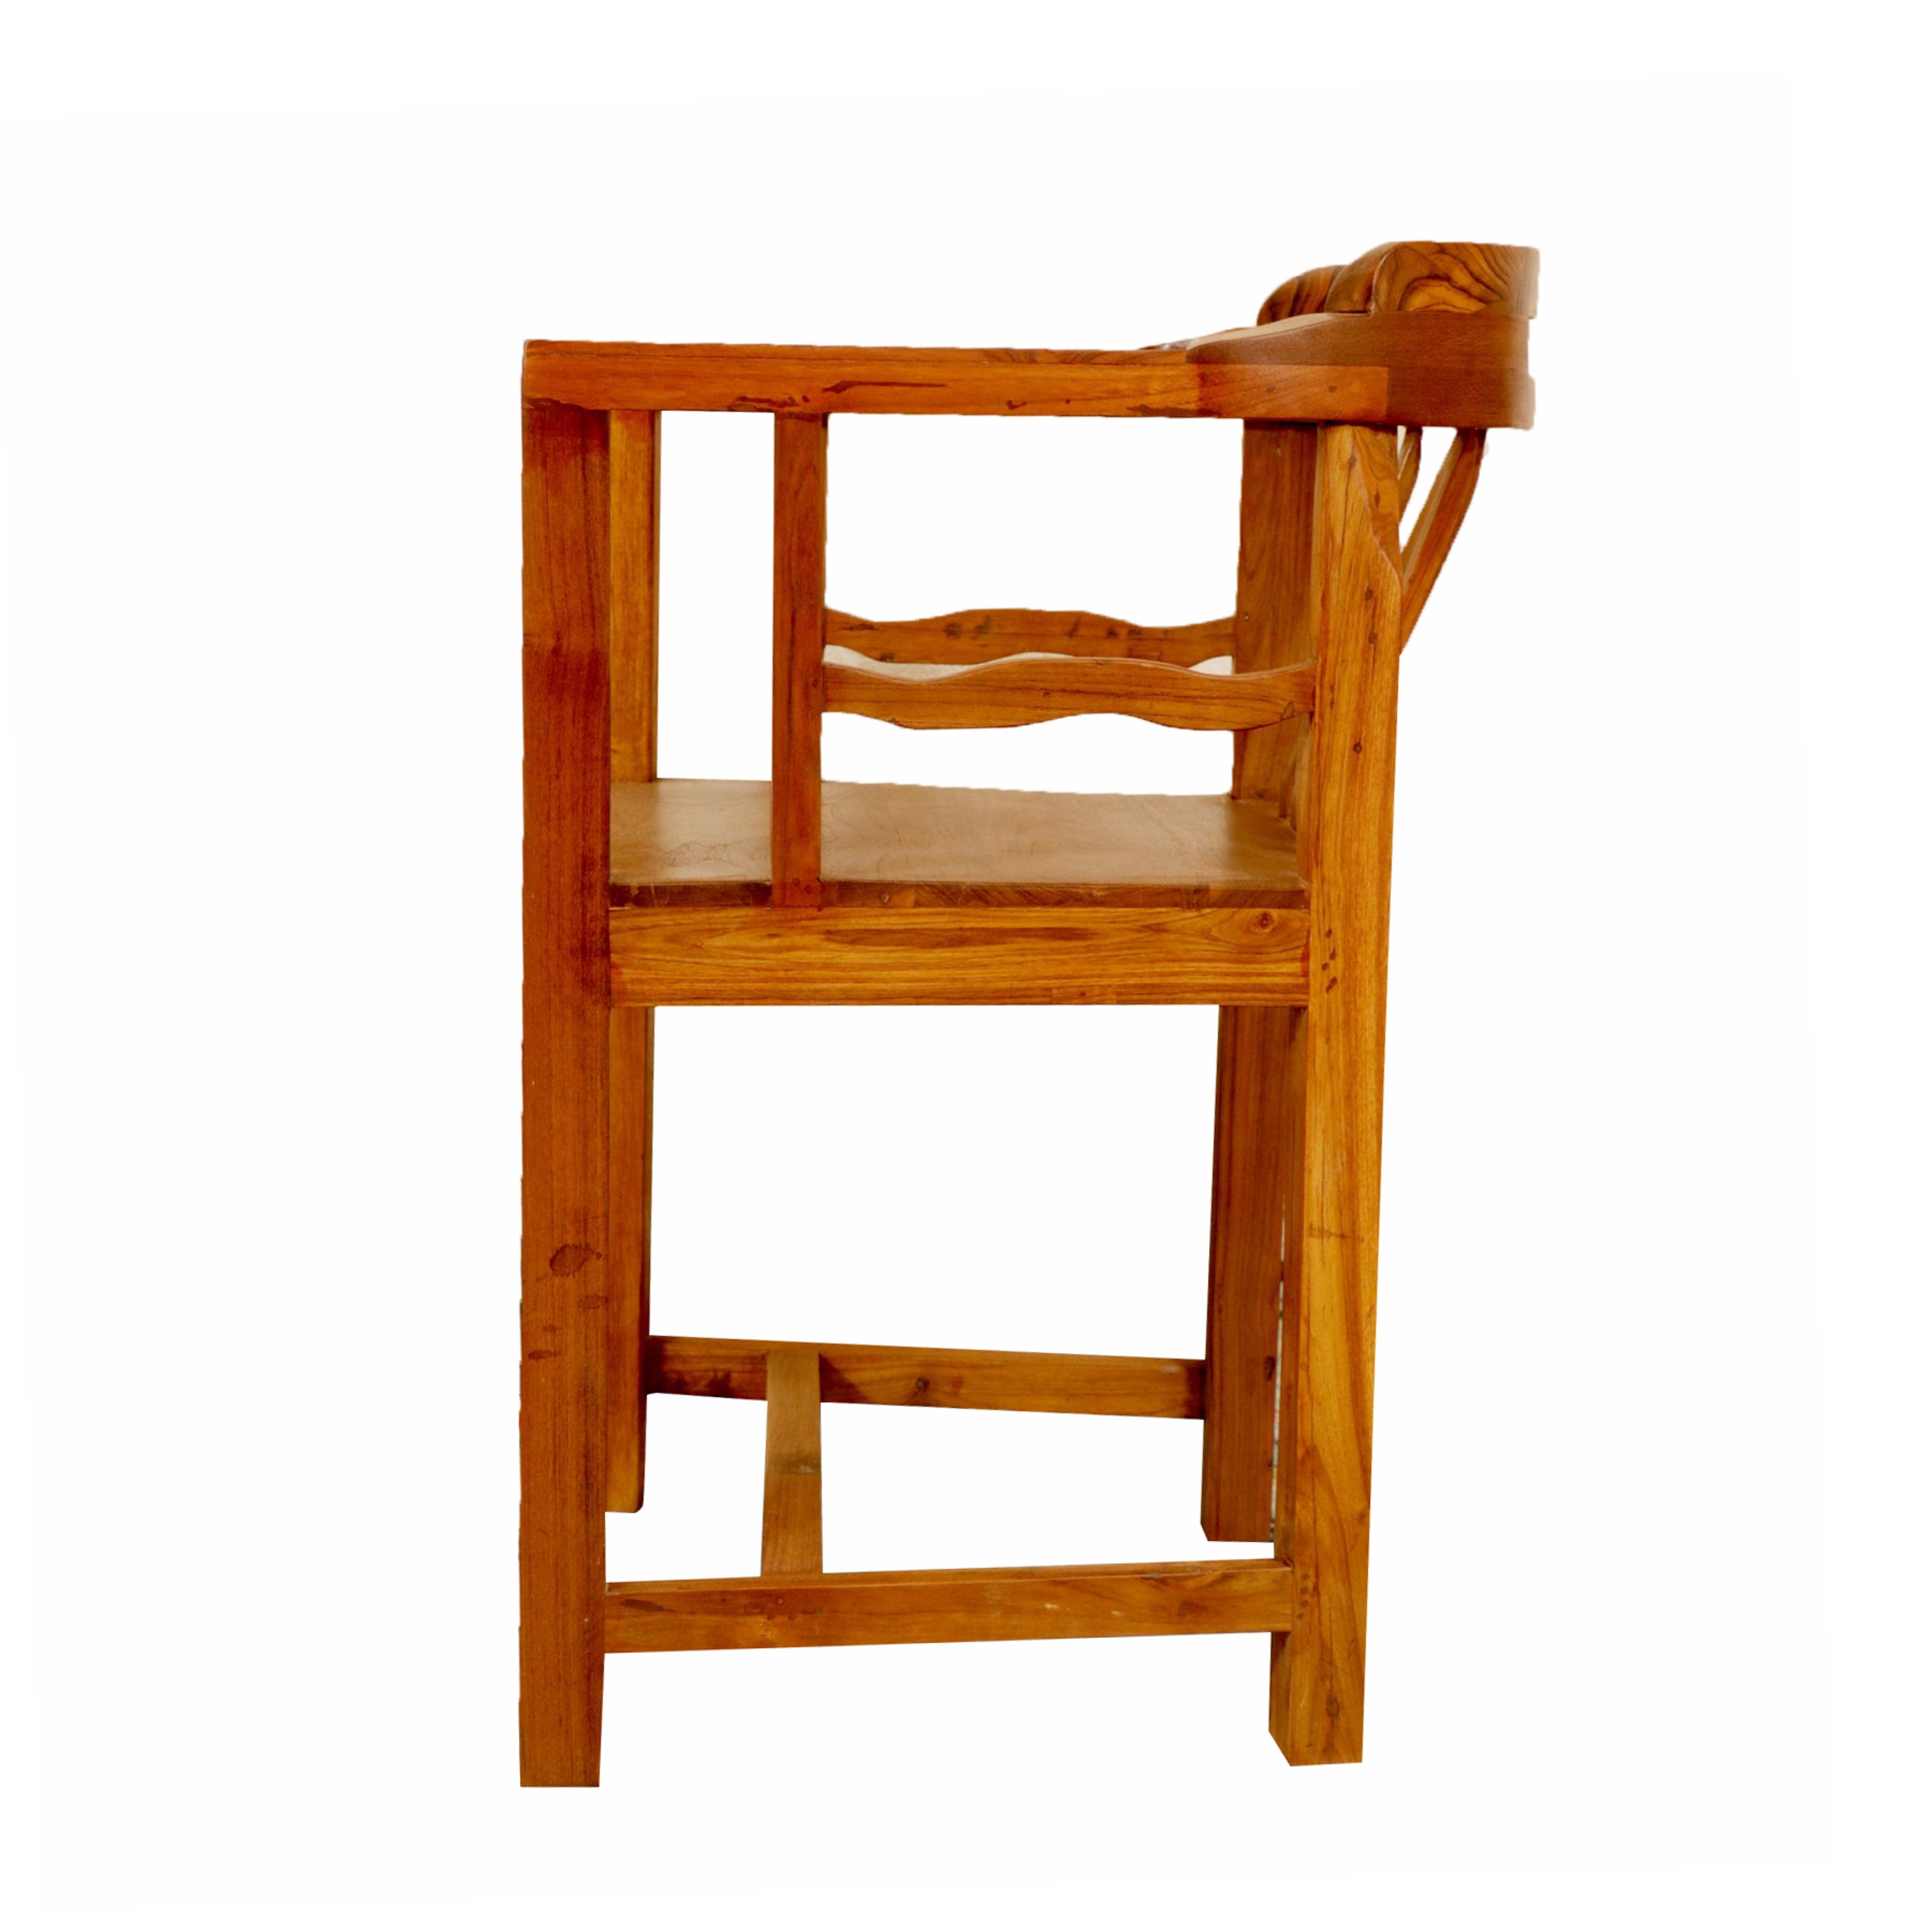 Natural Polish Square Chair Arm Chair